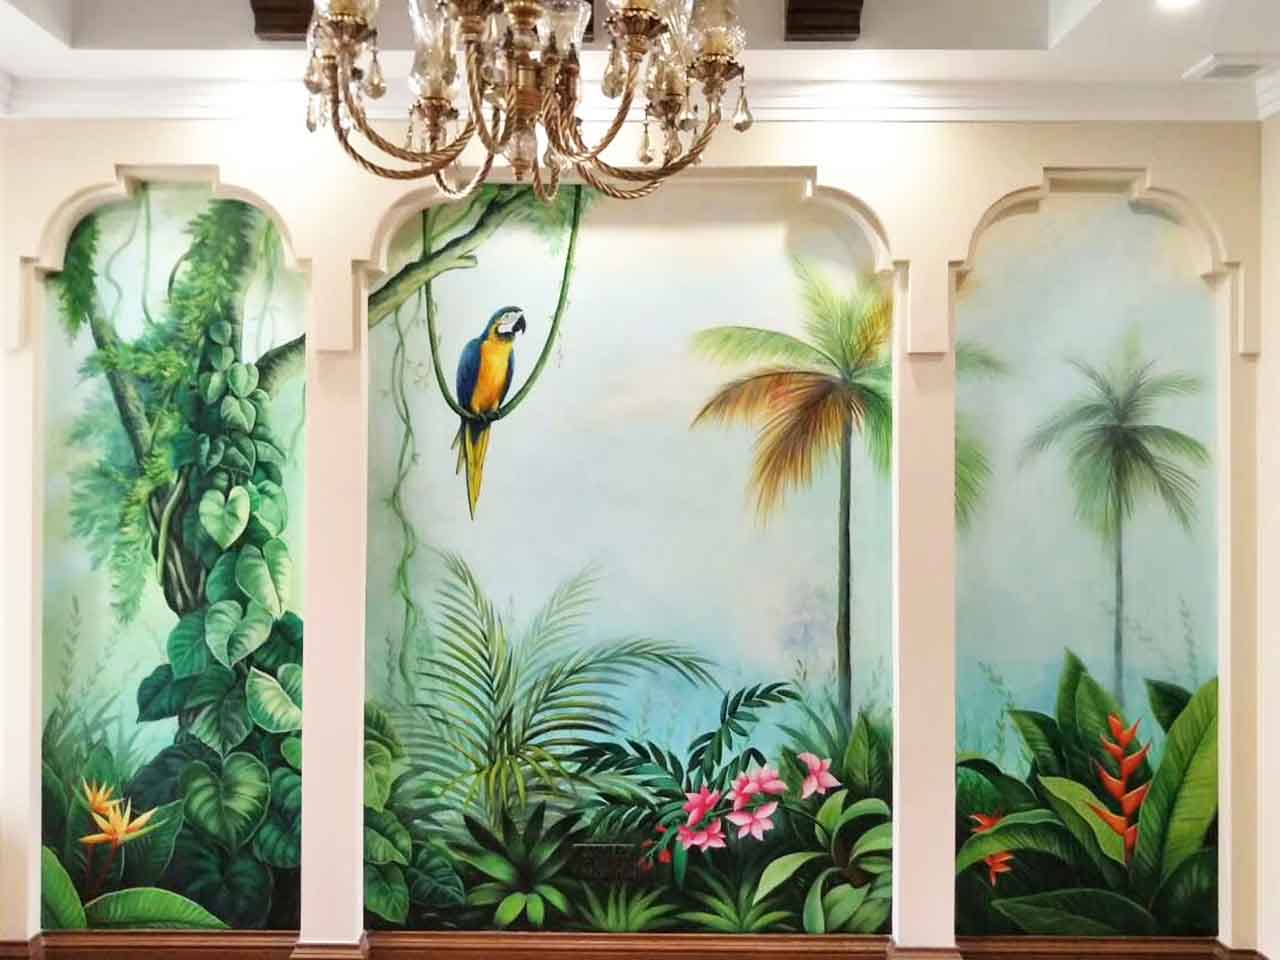 家装工装酒店会所美容院别墅写实花鸟风景墙绘壁画彩绘涂鸦手绘成都澜泉文化